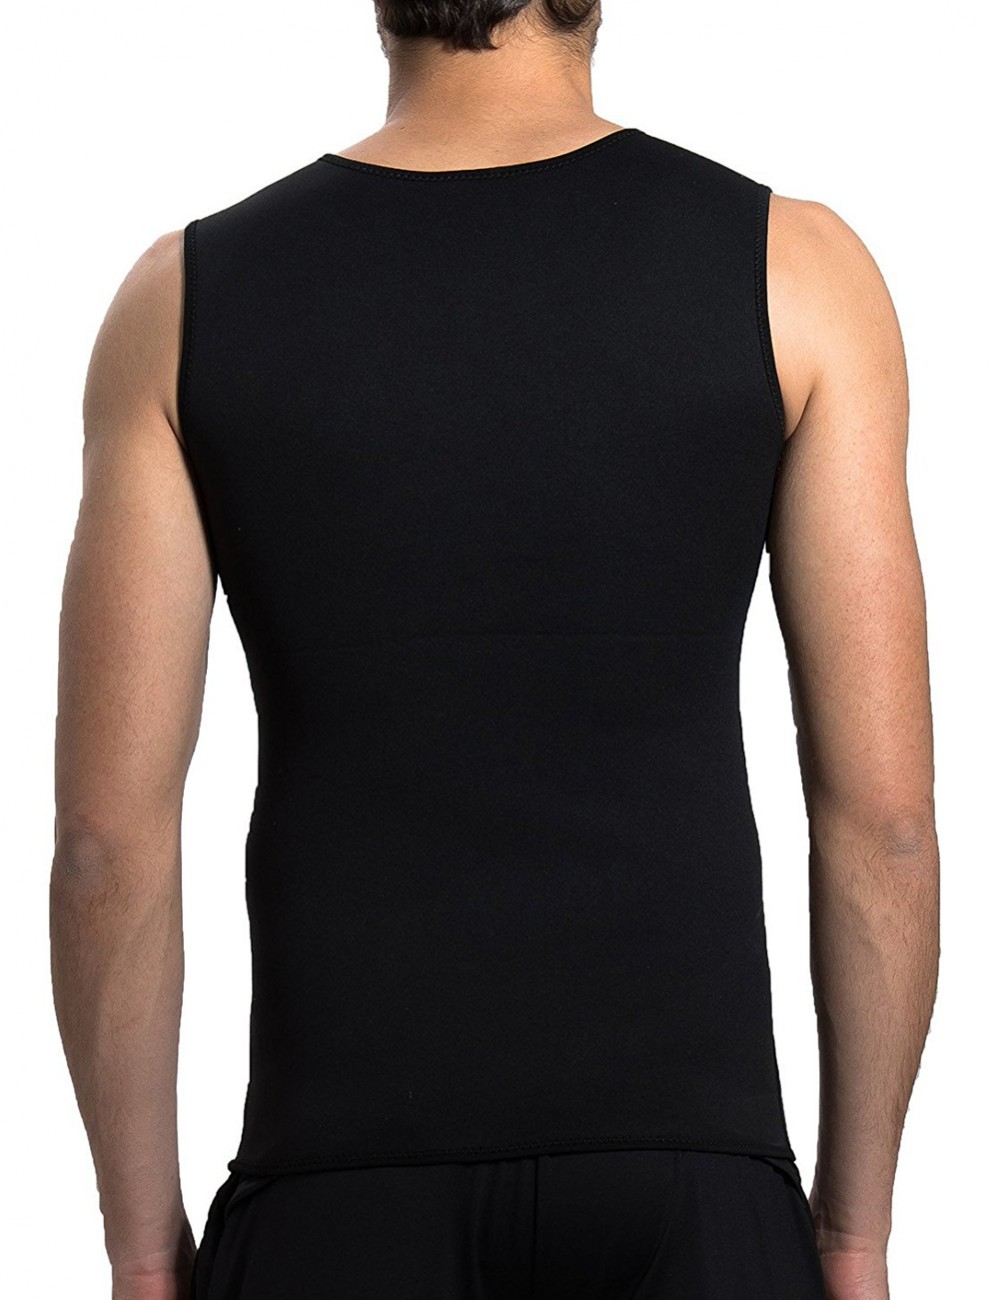 Burner Large Seamless Men Neoprene Black Shaping Vest